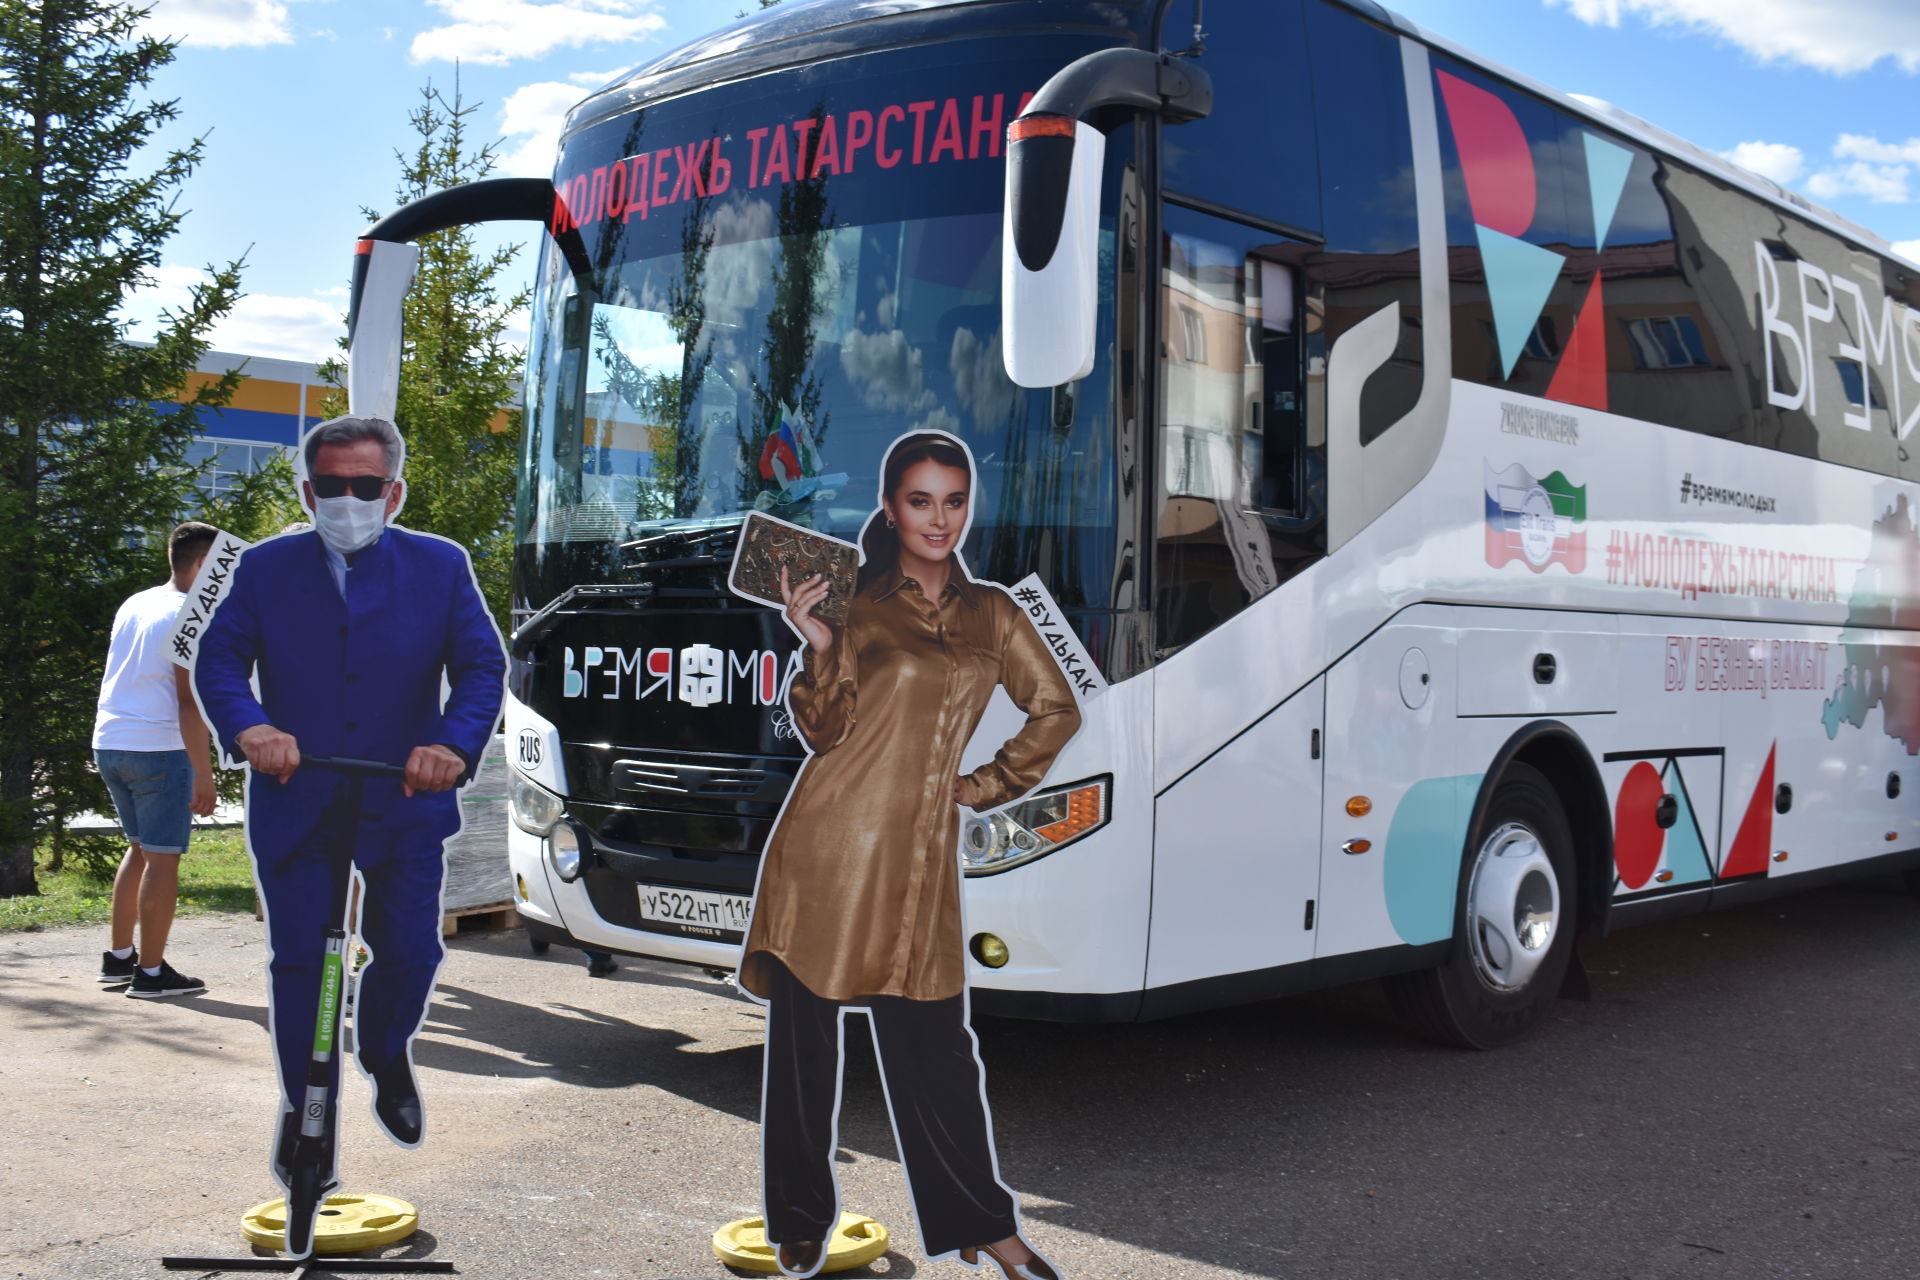 Автобус "Время молодых" прибыл в Кайбицкий район